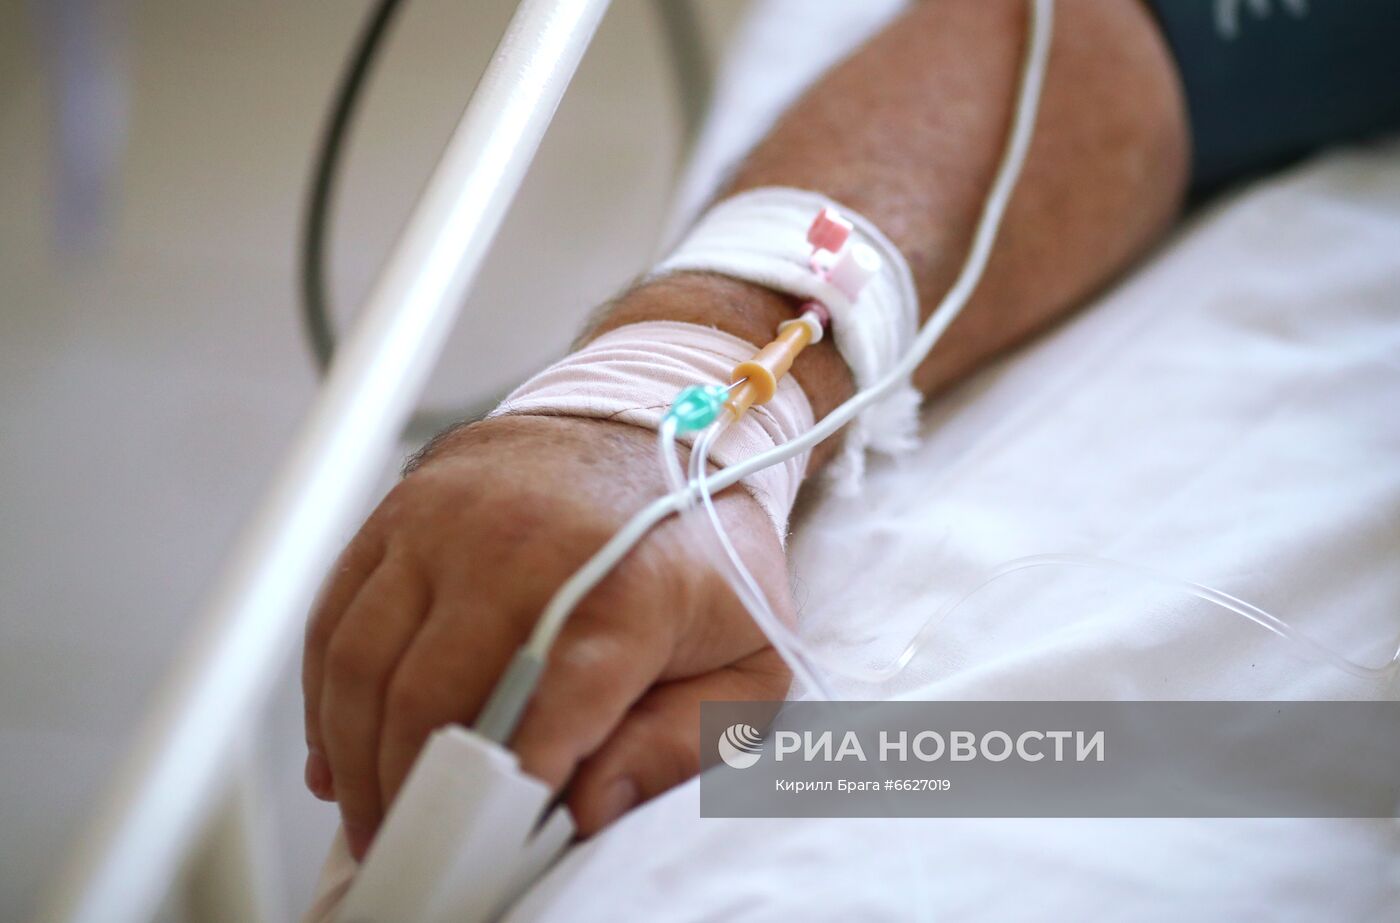 Лечение больных с Covid-19 в больнице скорой помощи в Волгограде